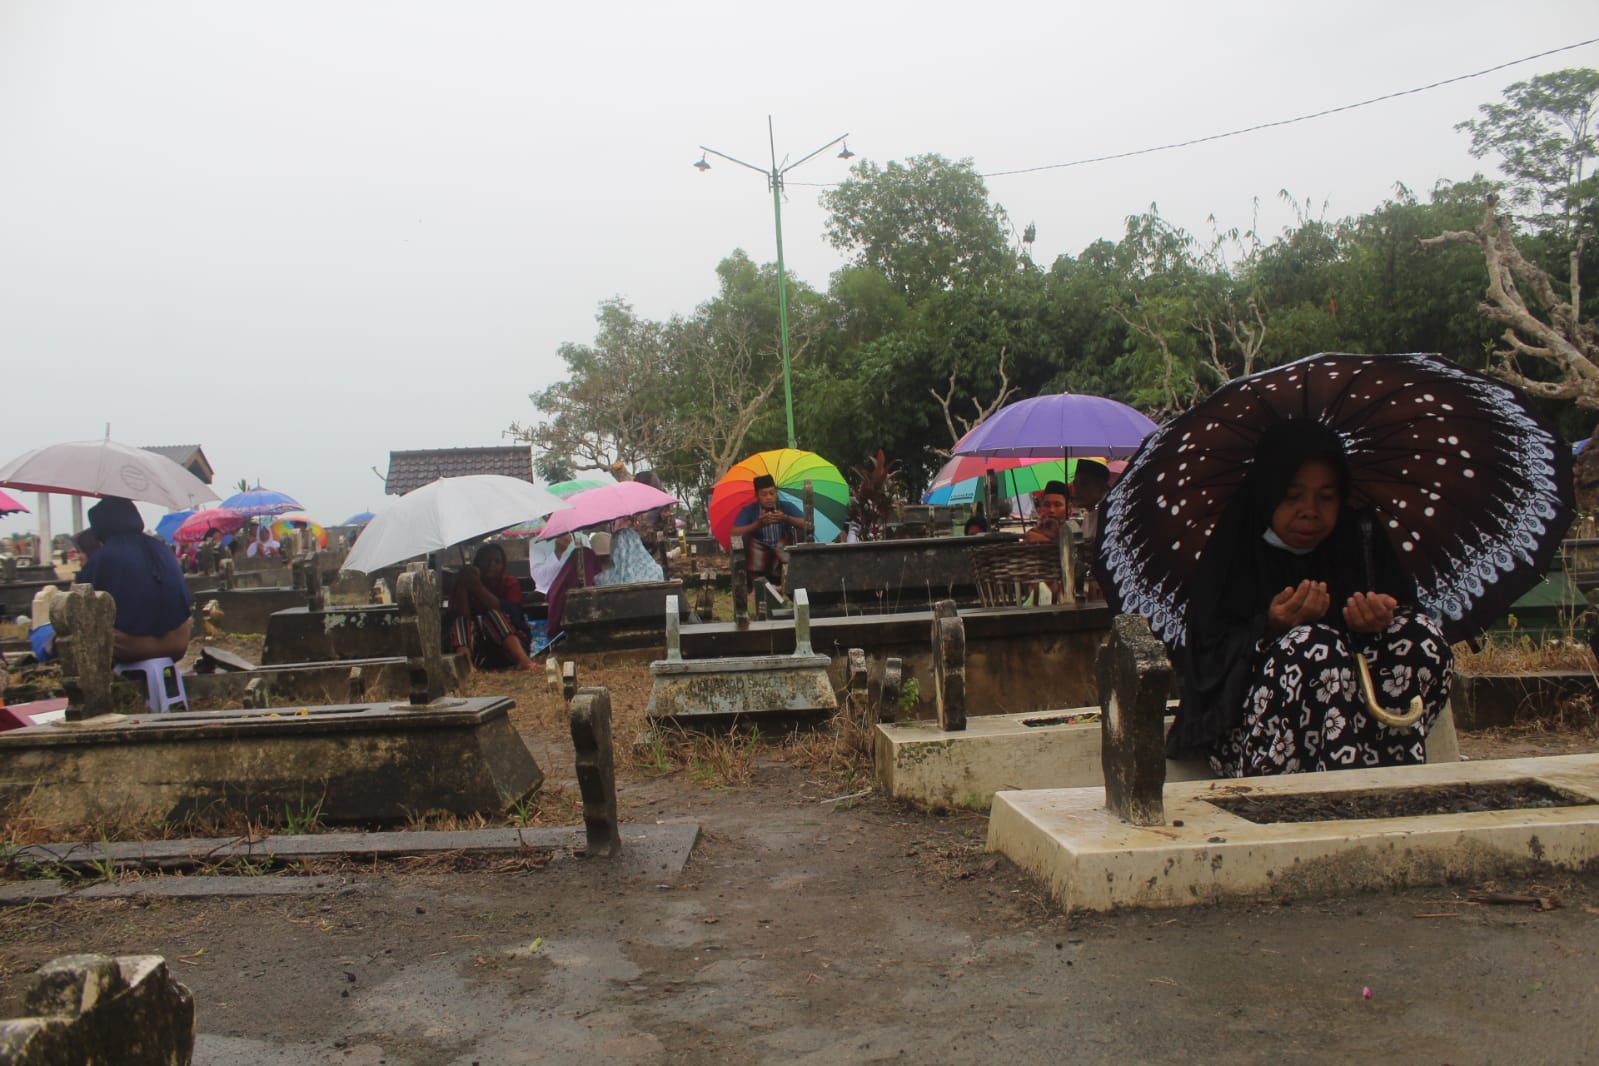 Warga tetap khusyu' berdoa meski diiringi hujan gerimis. (foto: kabartrenggalek.com)